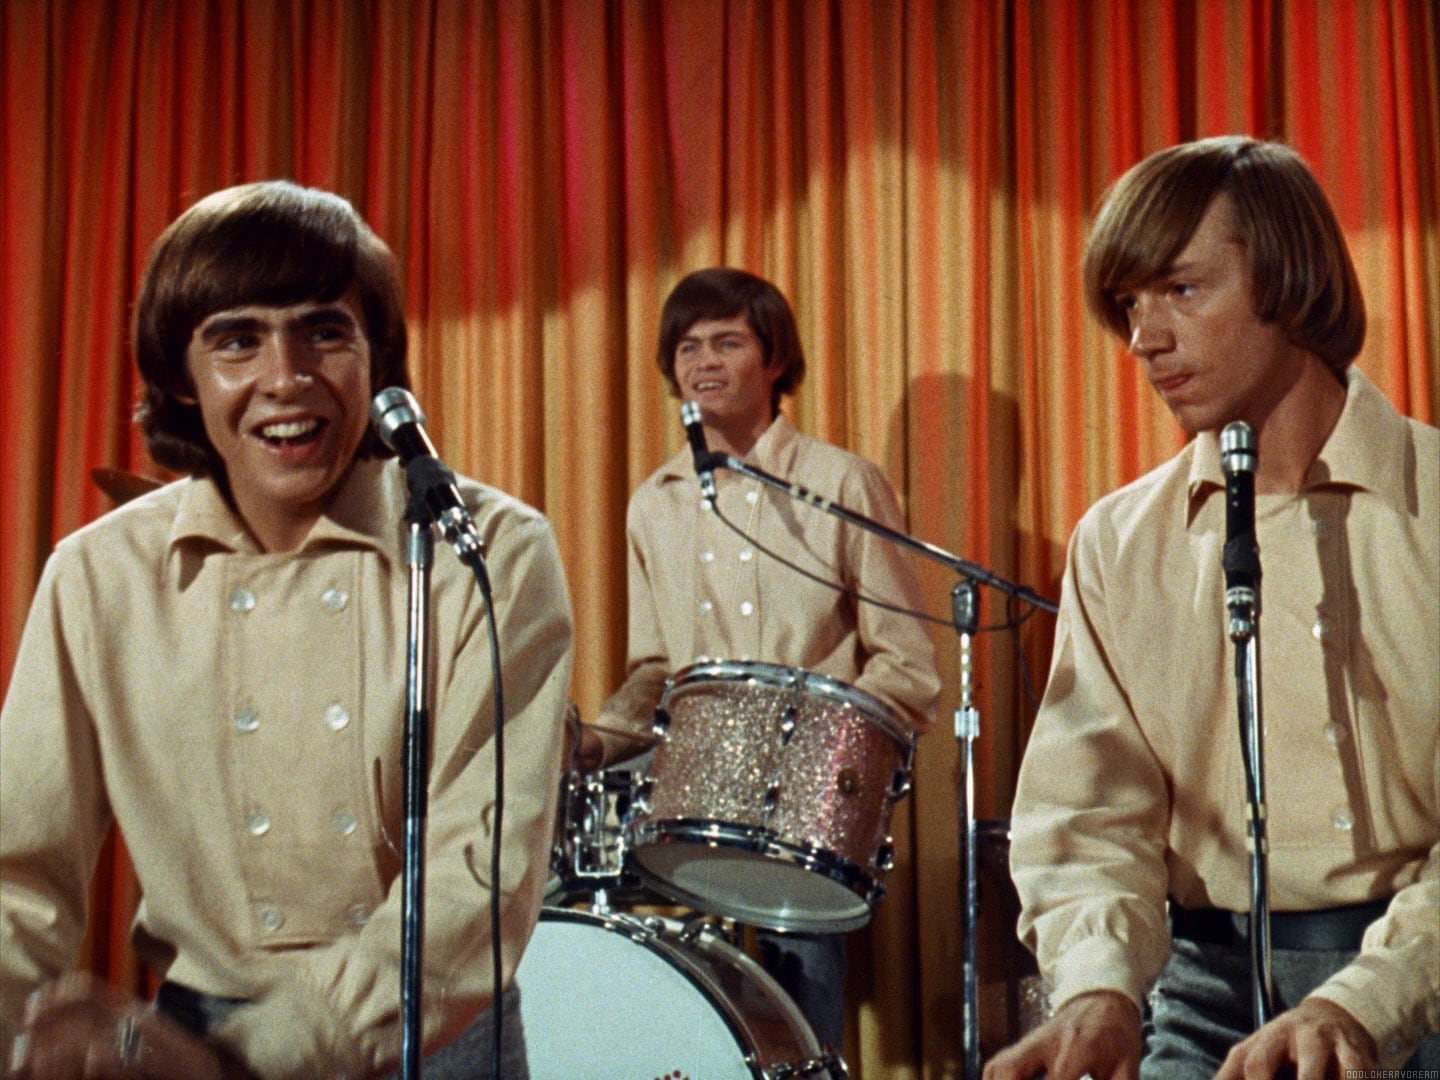 Музыка нилу. I’M A Believer the Monkees. Группа the Monkees. The Monkees фото. The Monkees 1964 обложка.